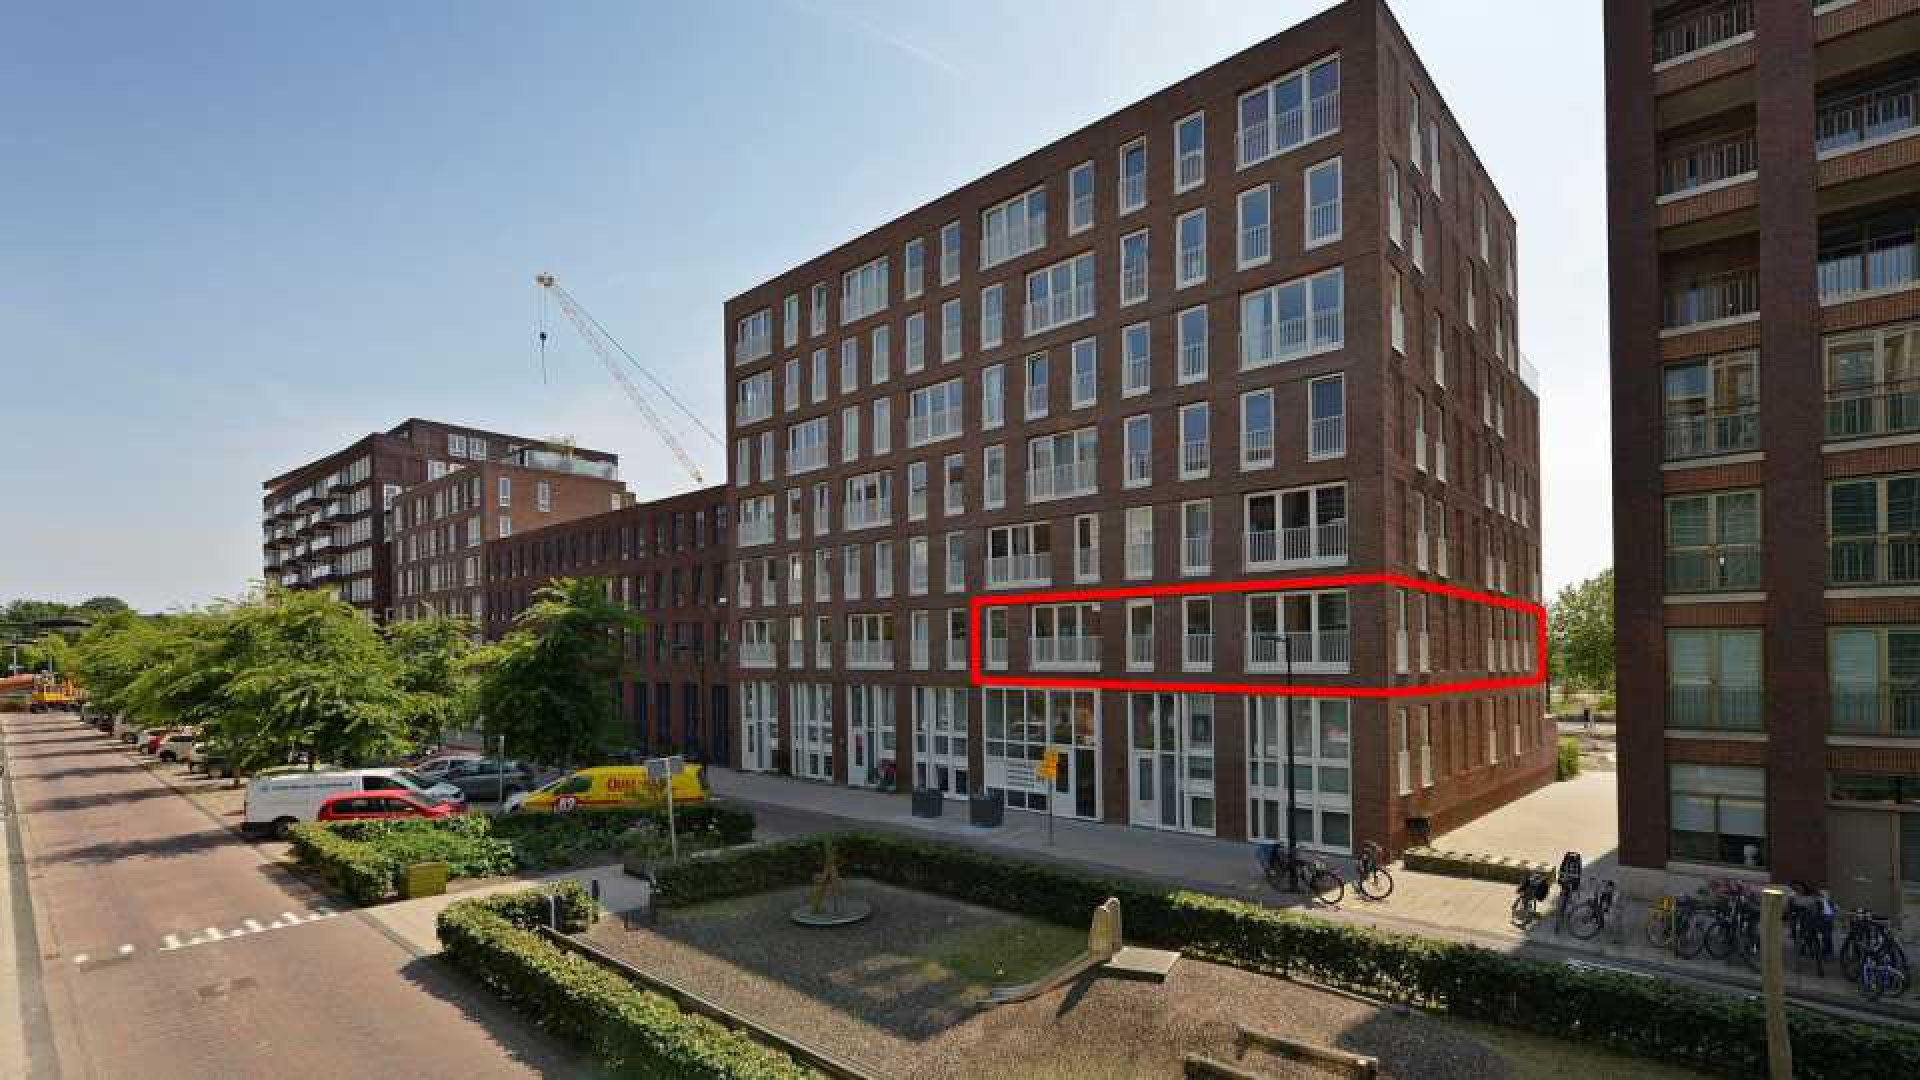 PSV voetballer Steven Bergwijn koopt luxe appartement in Amsterdam